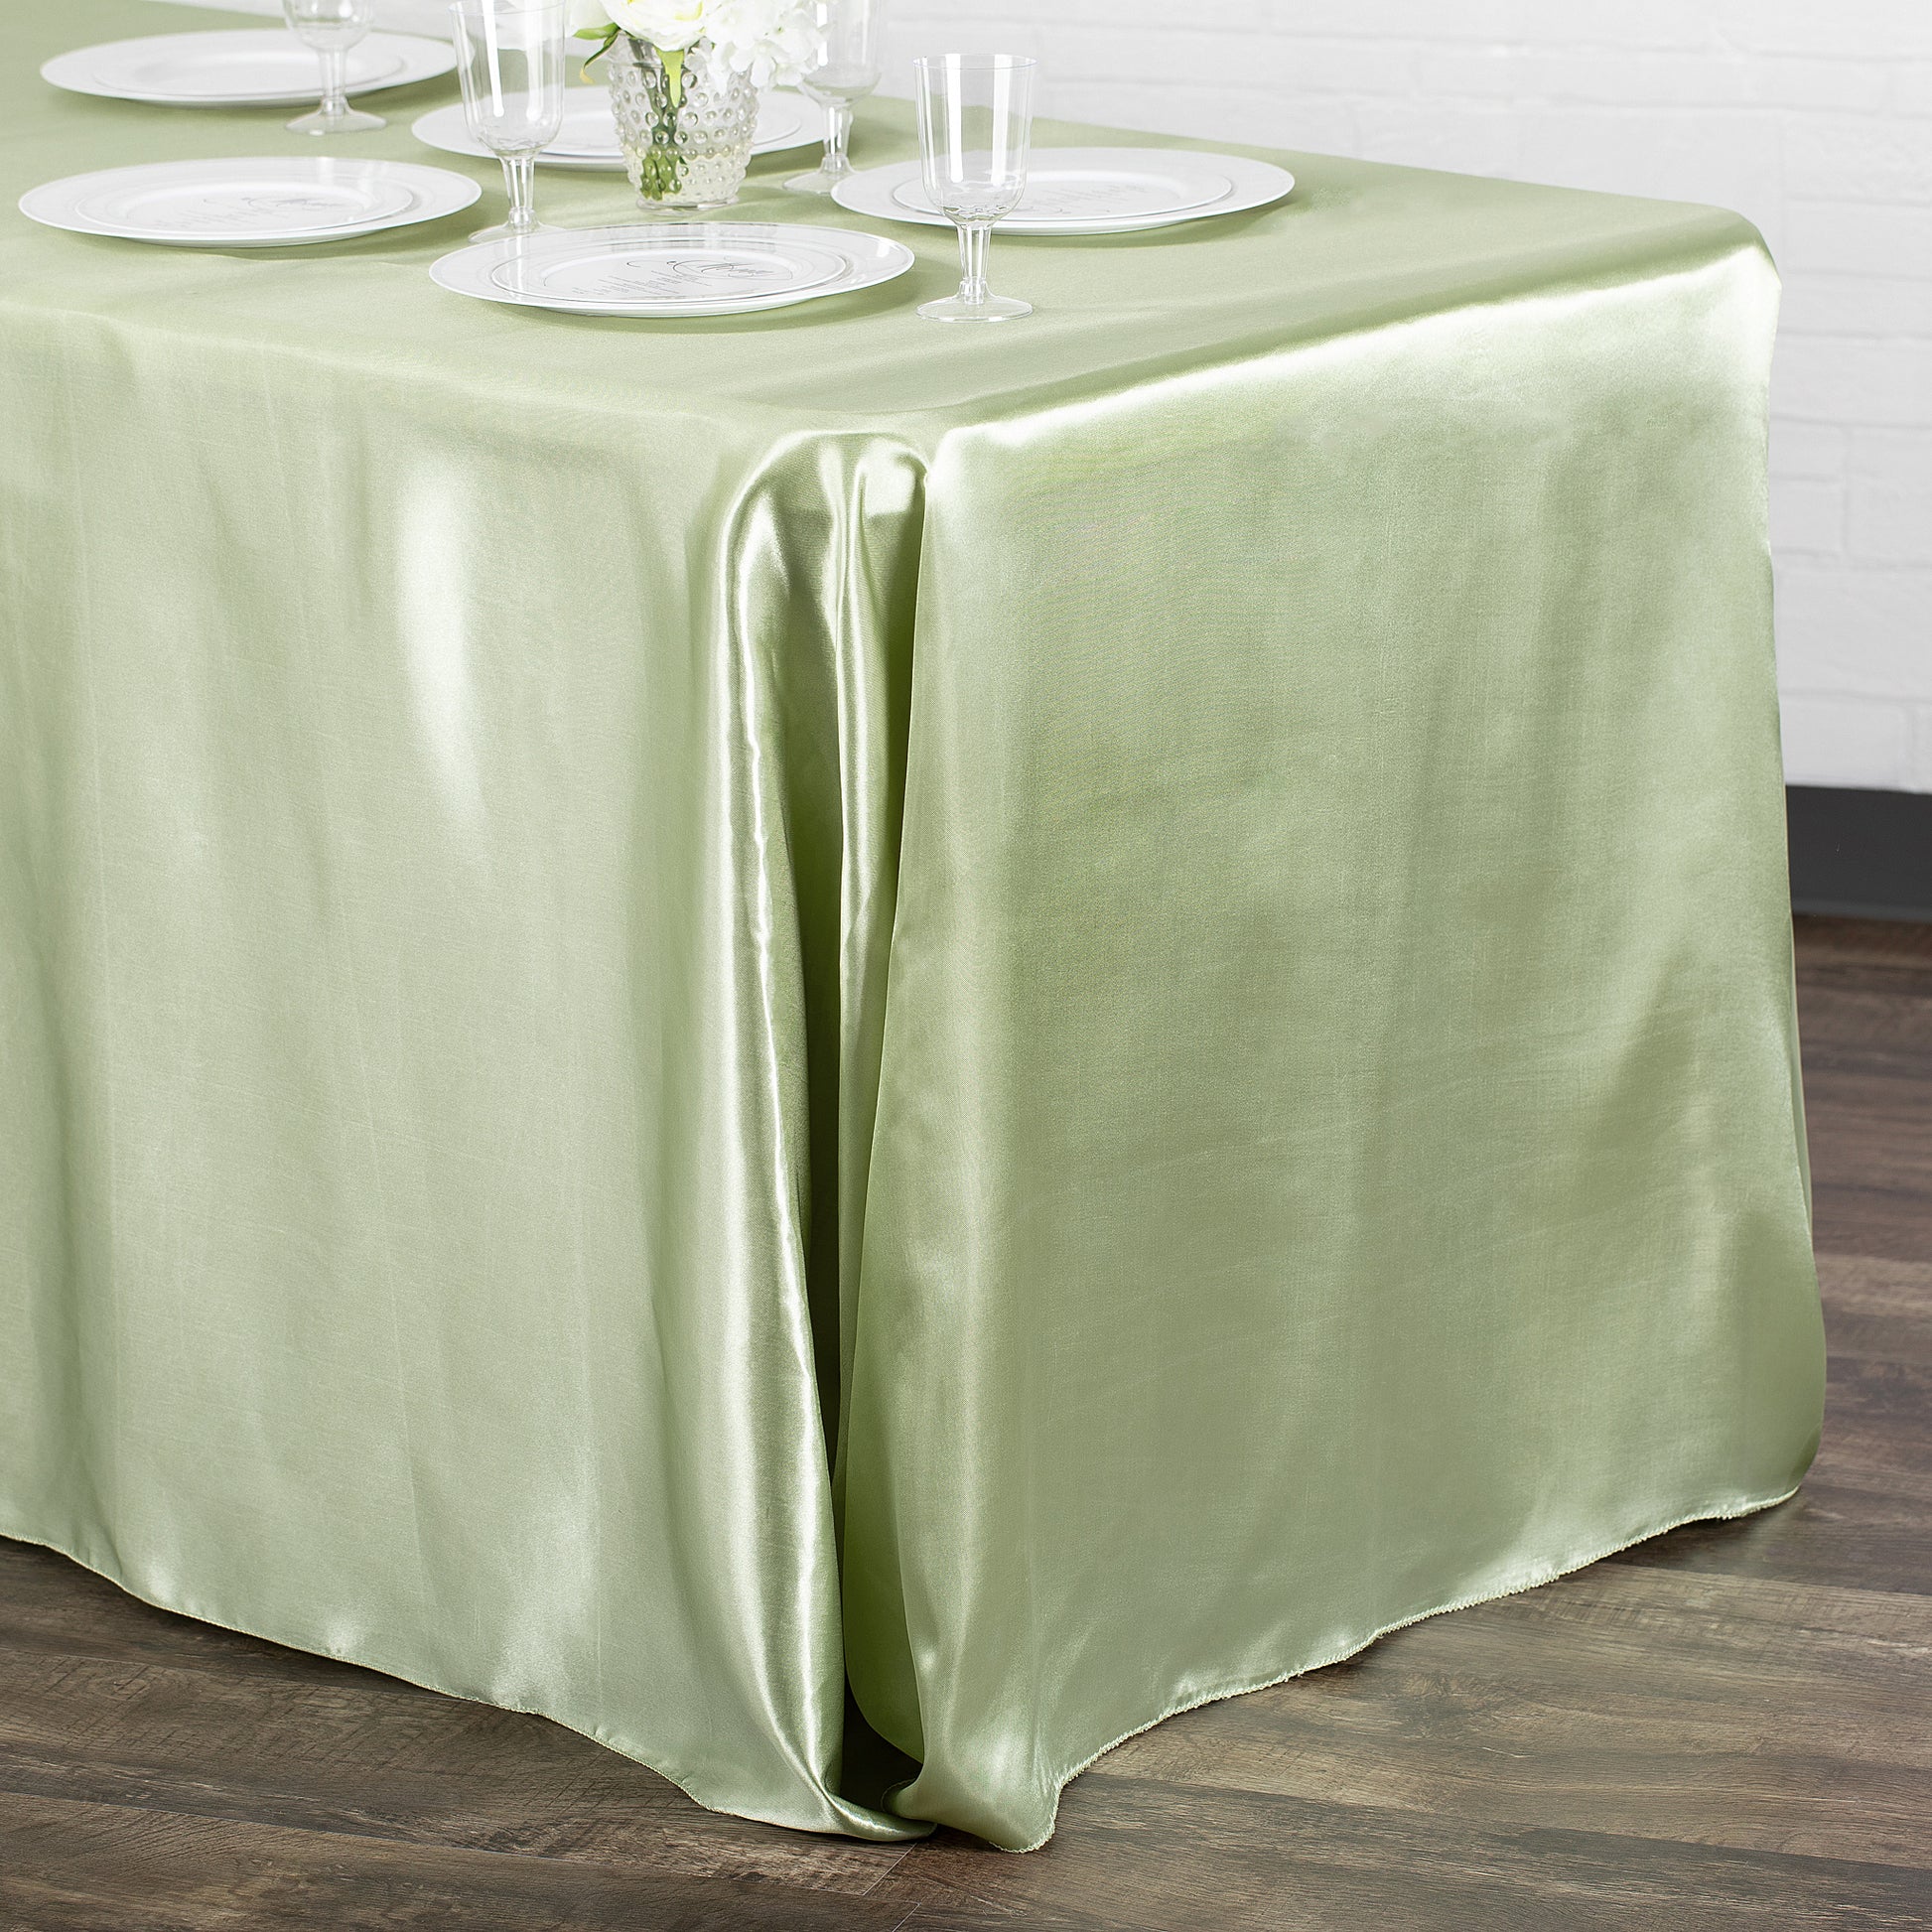 90"x156" Rectangular Satin Tablecloth - Sage Green